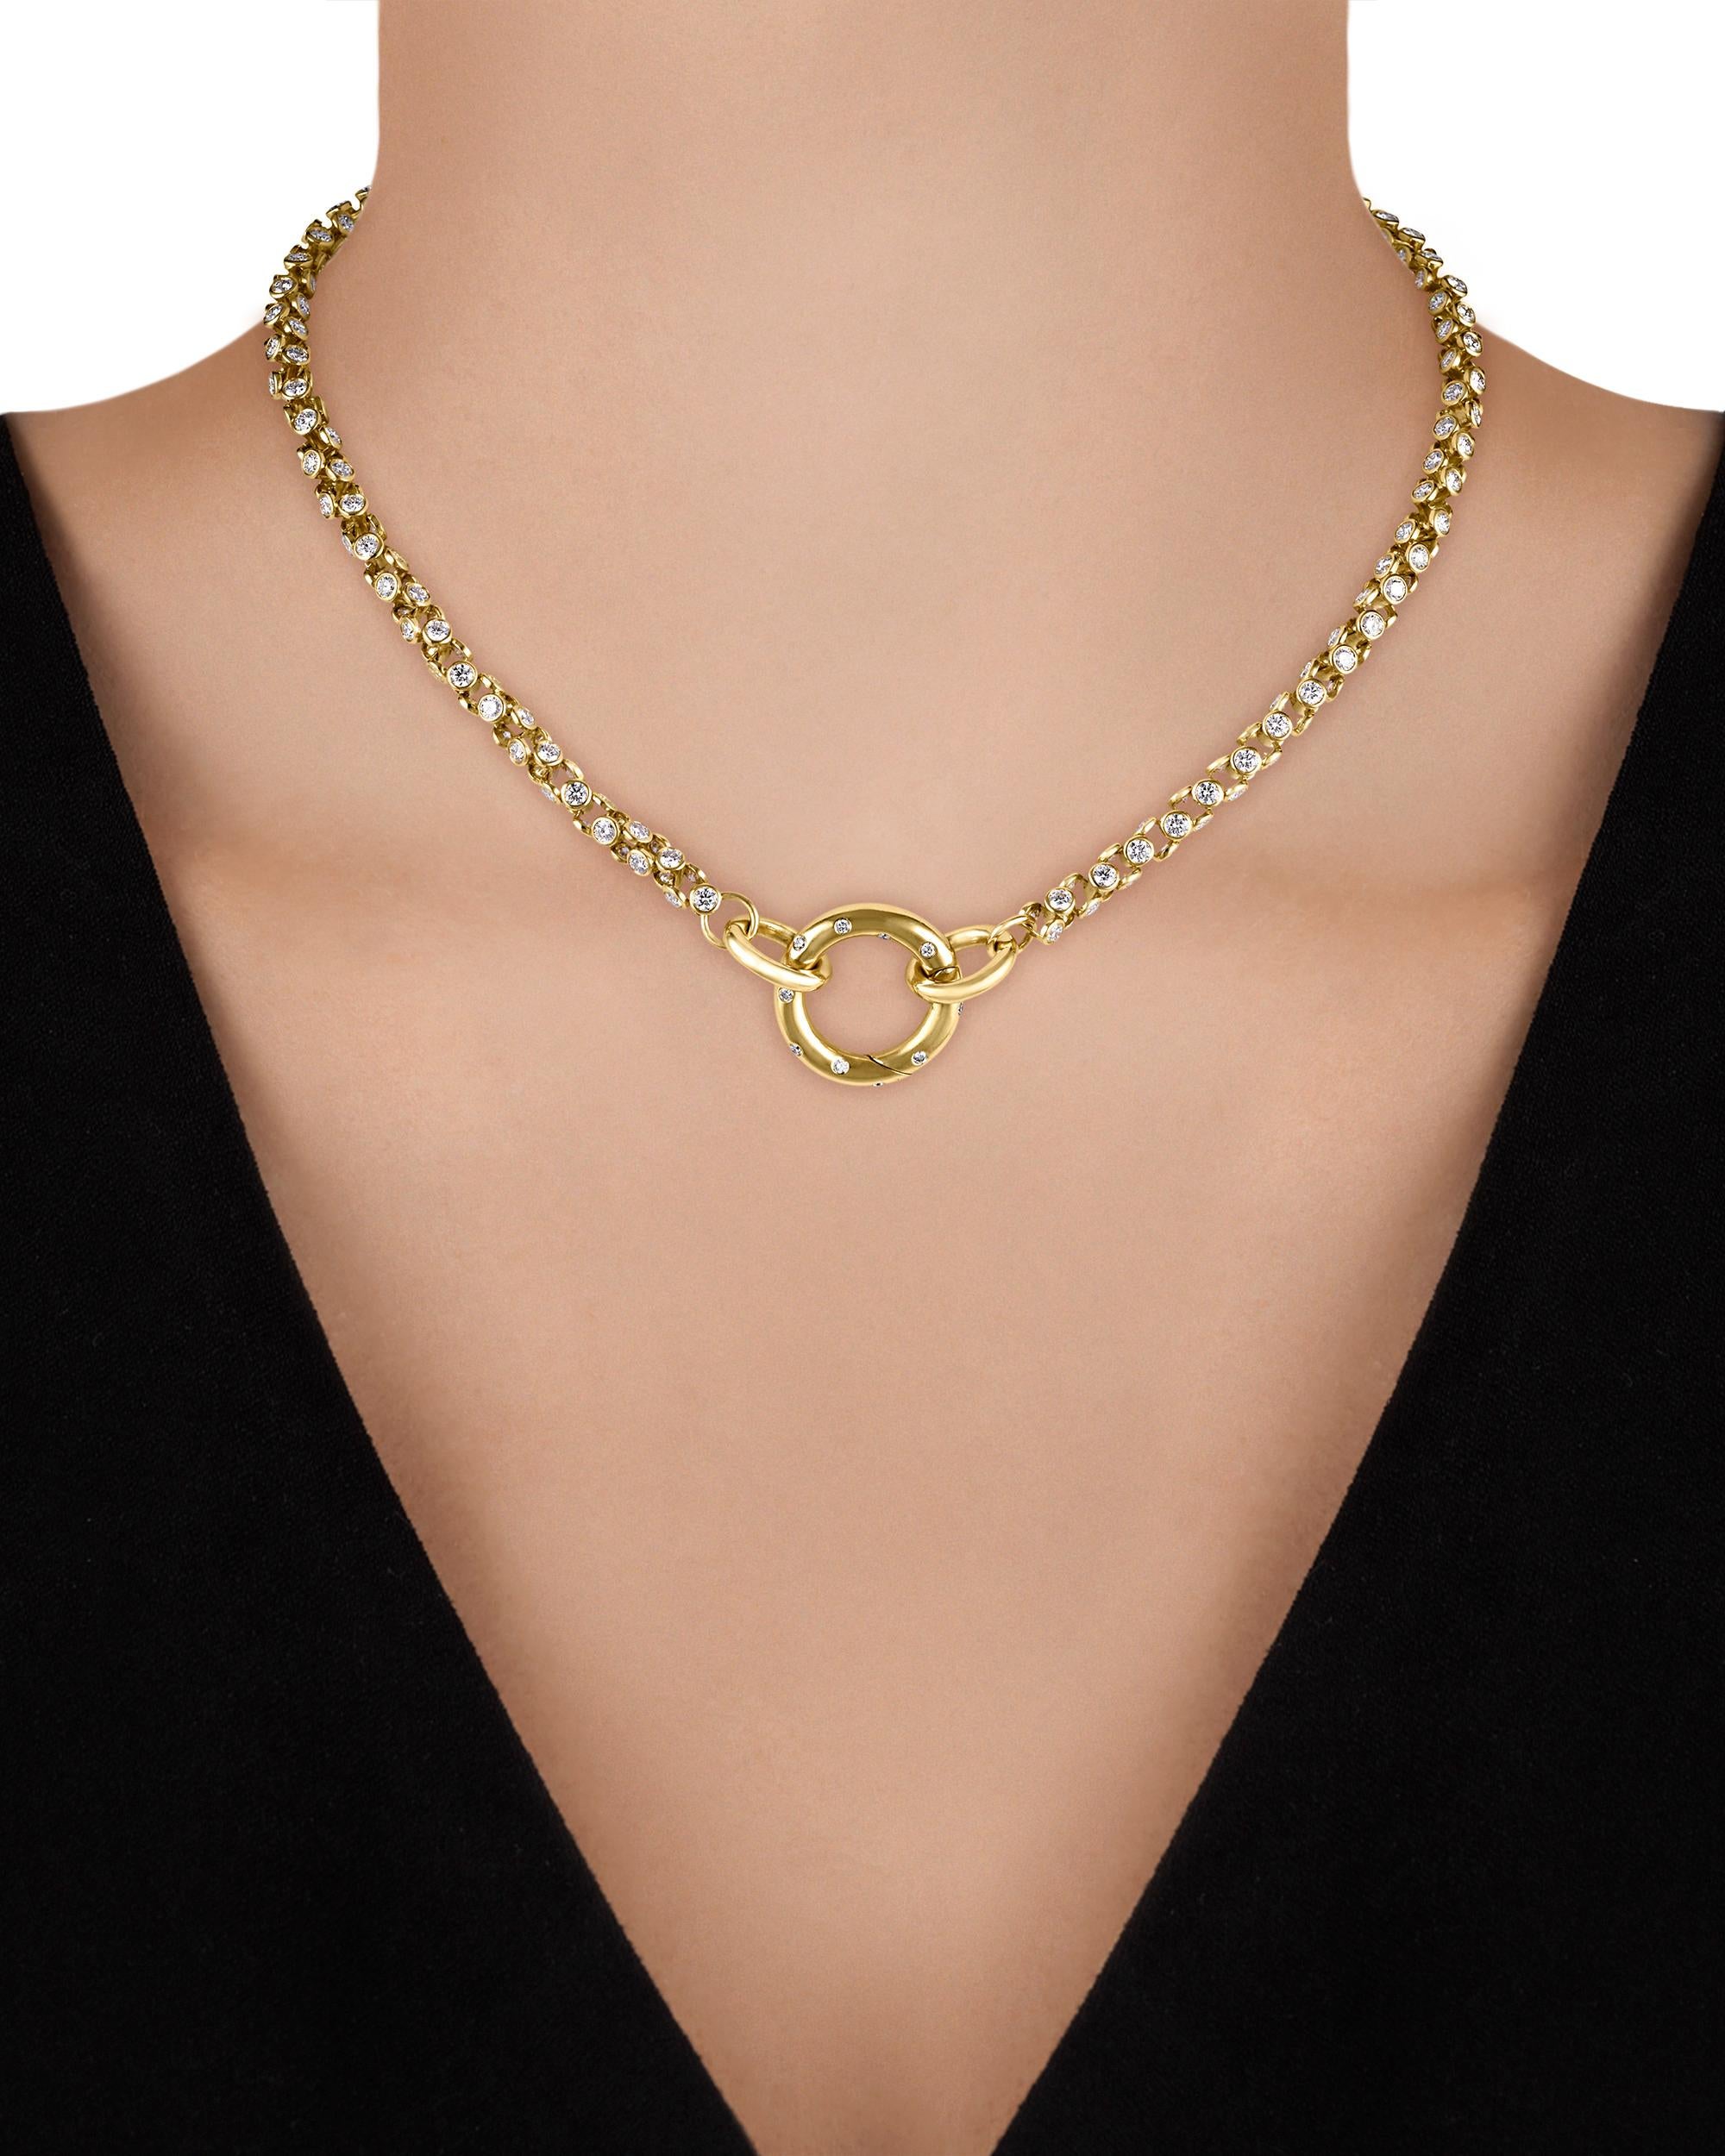 Modern Gold and Diamond Link Necklace by Oscar Heyman